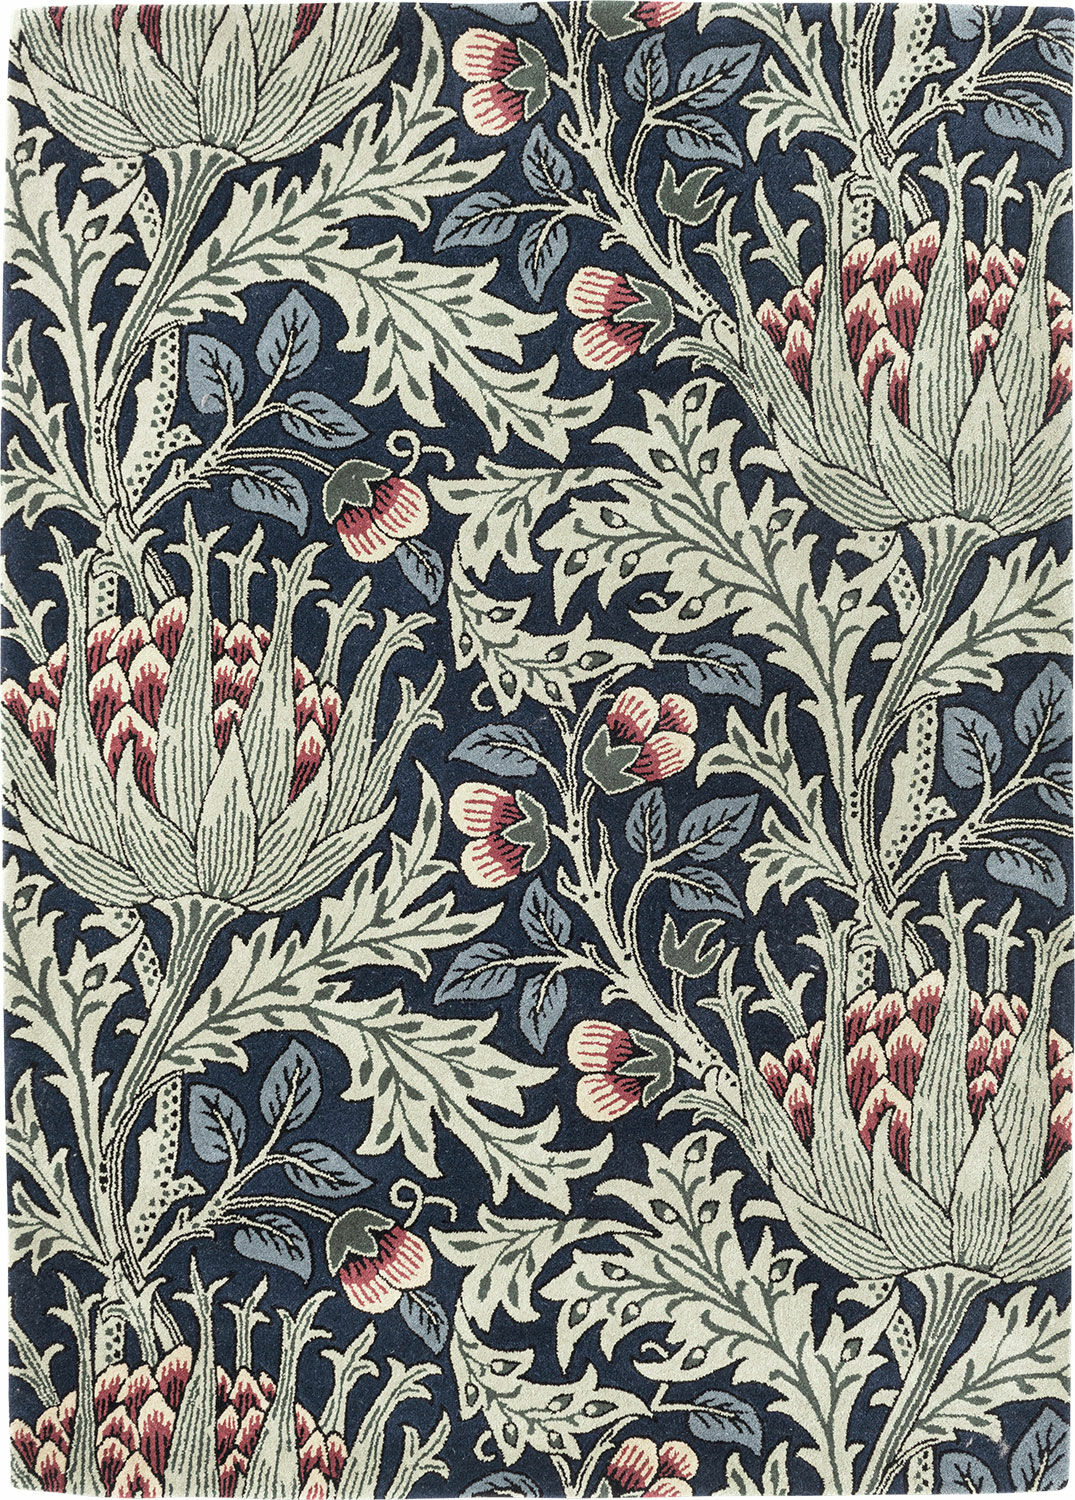 Teppich "Artichoke" (170 x 240 cm) - nach William Morris